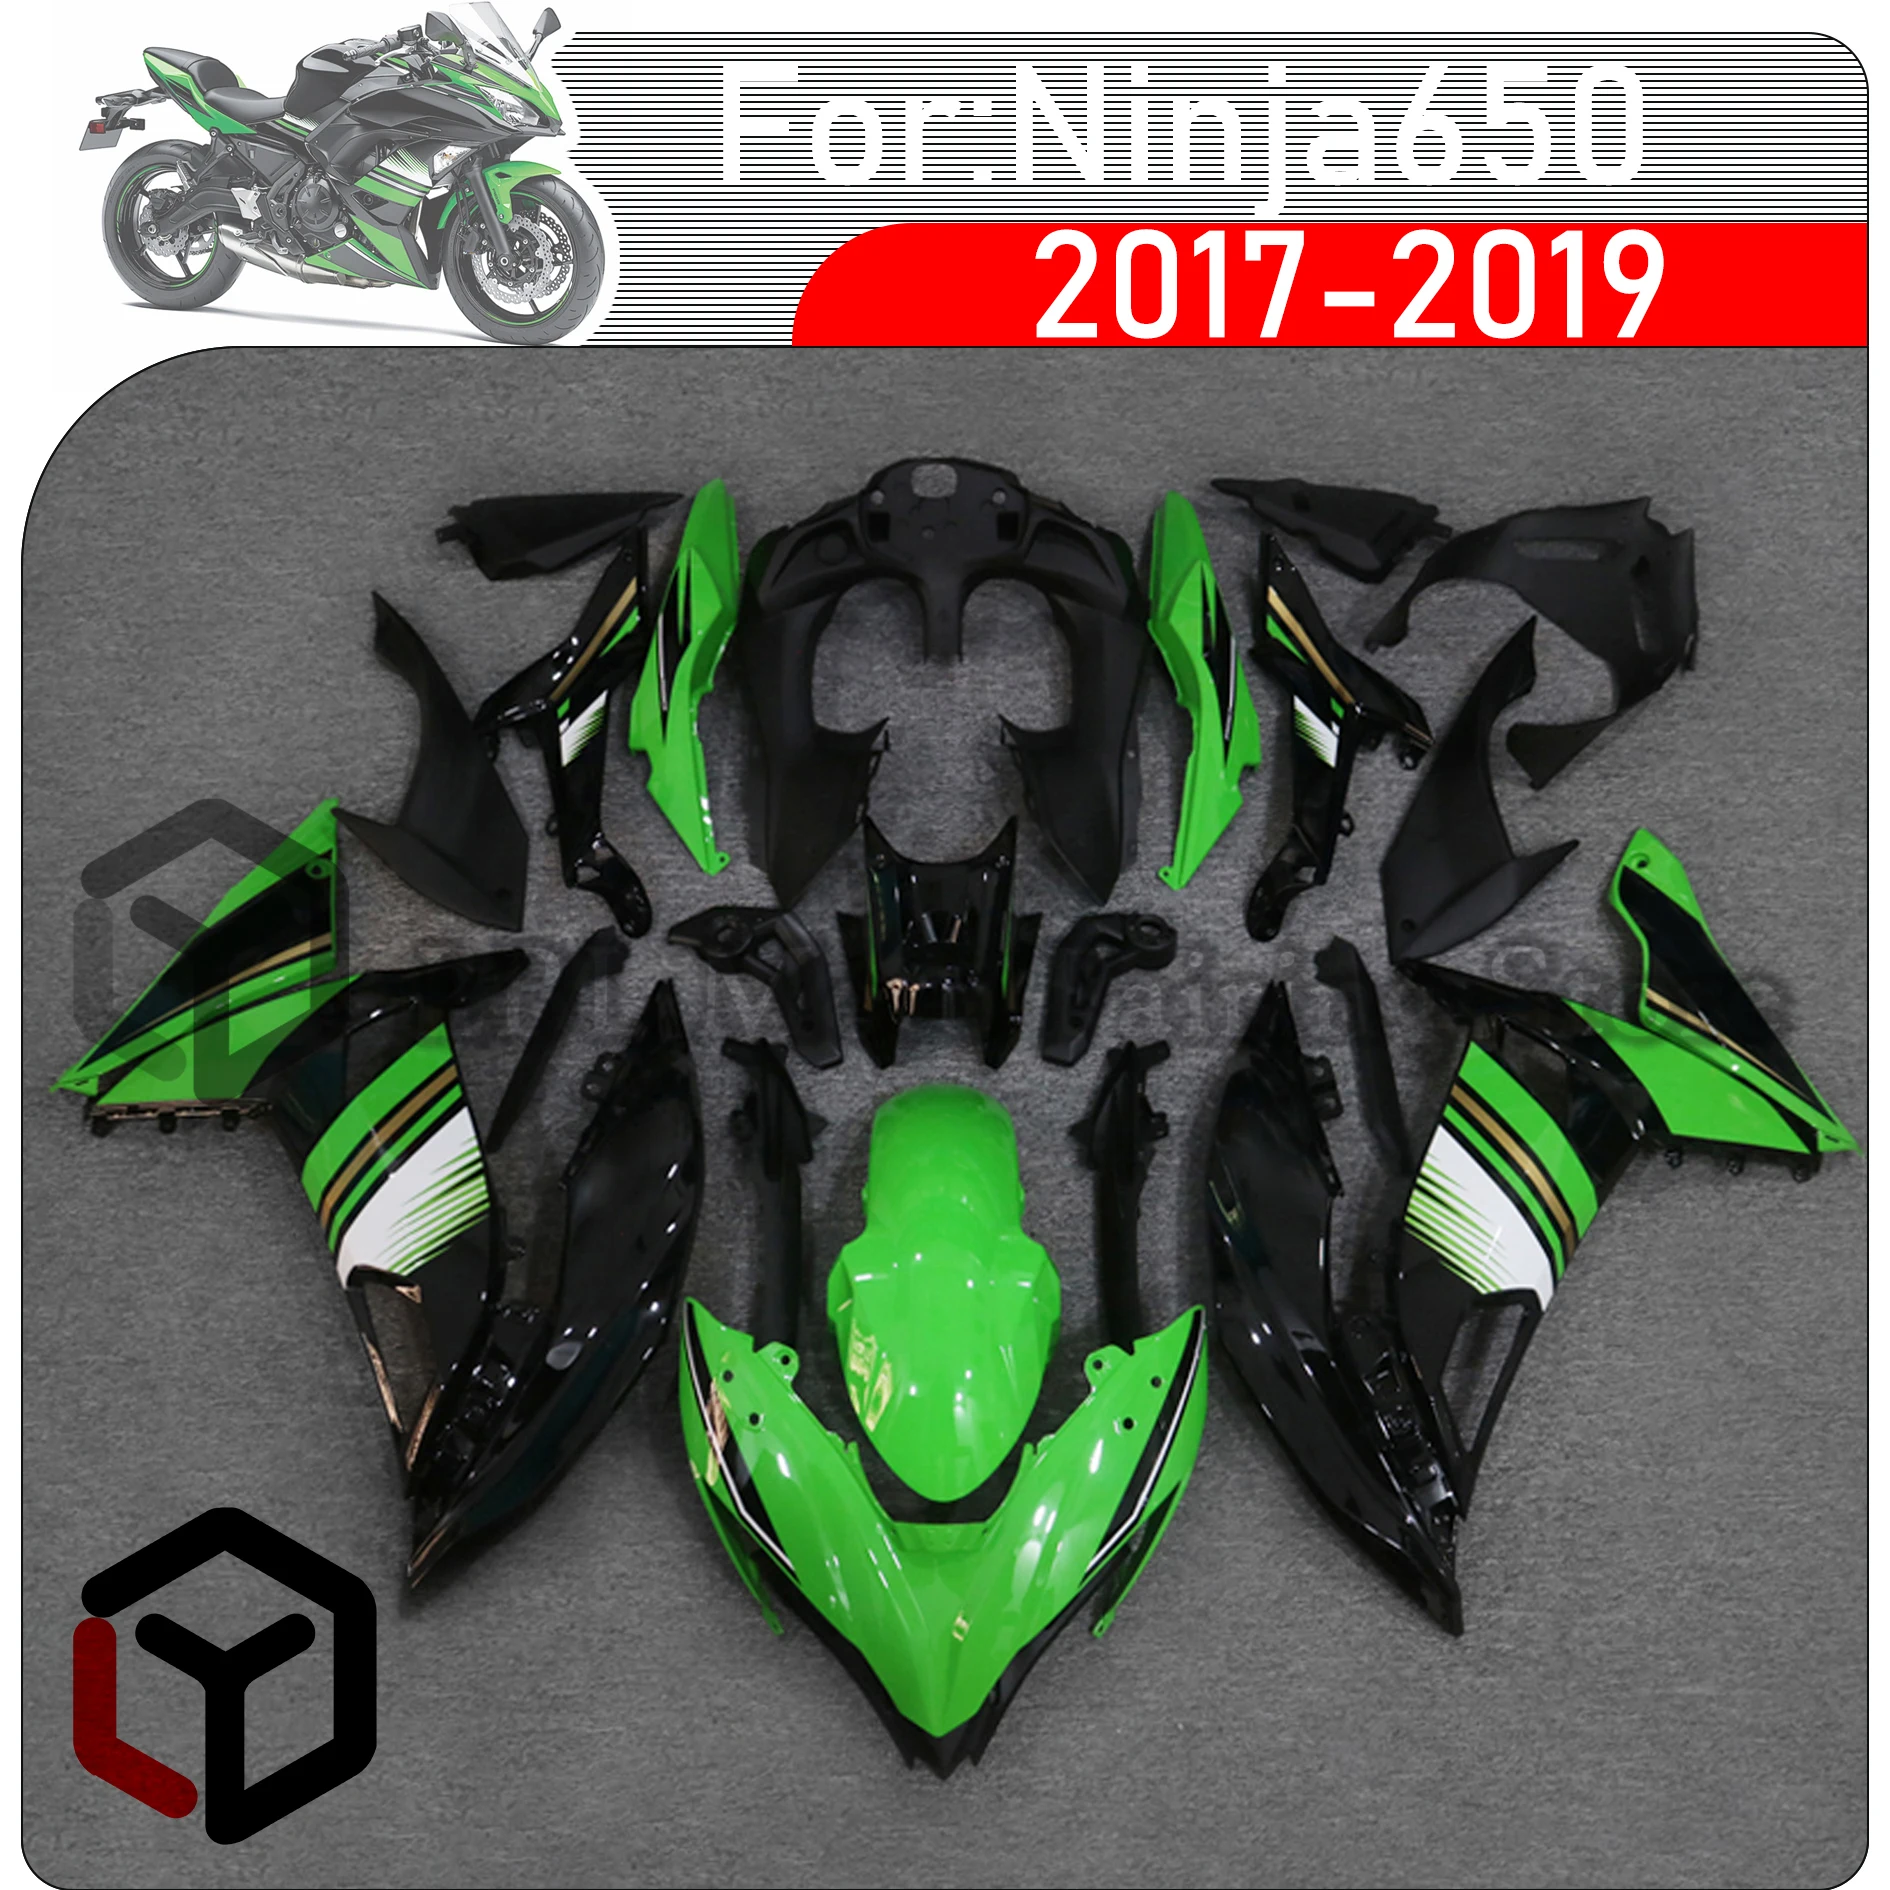 

Комплект обтекателей ракушек мотоцикла для Kawasaki ZX650 EX650 ER6F 650 NINJA650 2017 2018 комплект обтекателей ABS литьё под давлением полный обтекатель